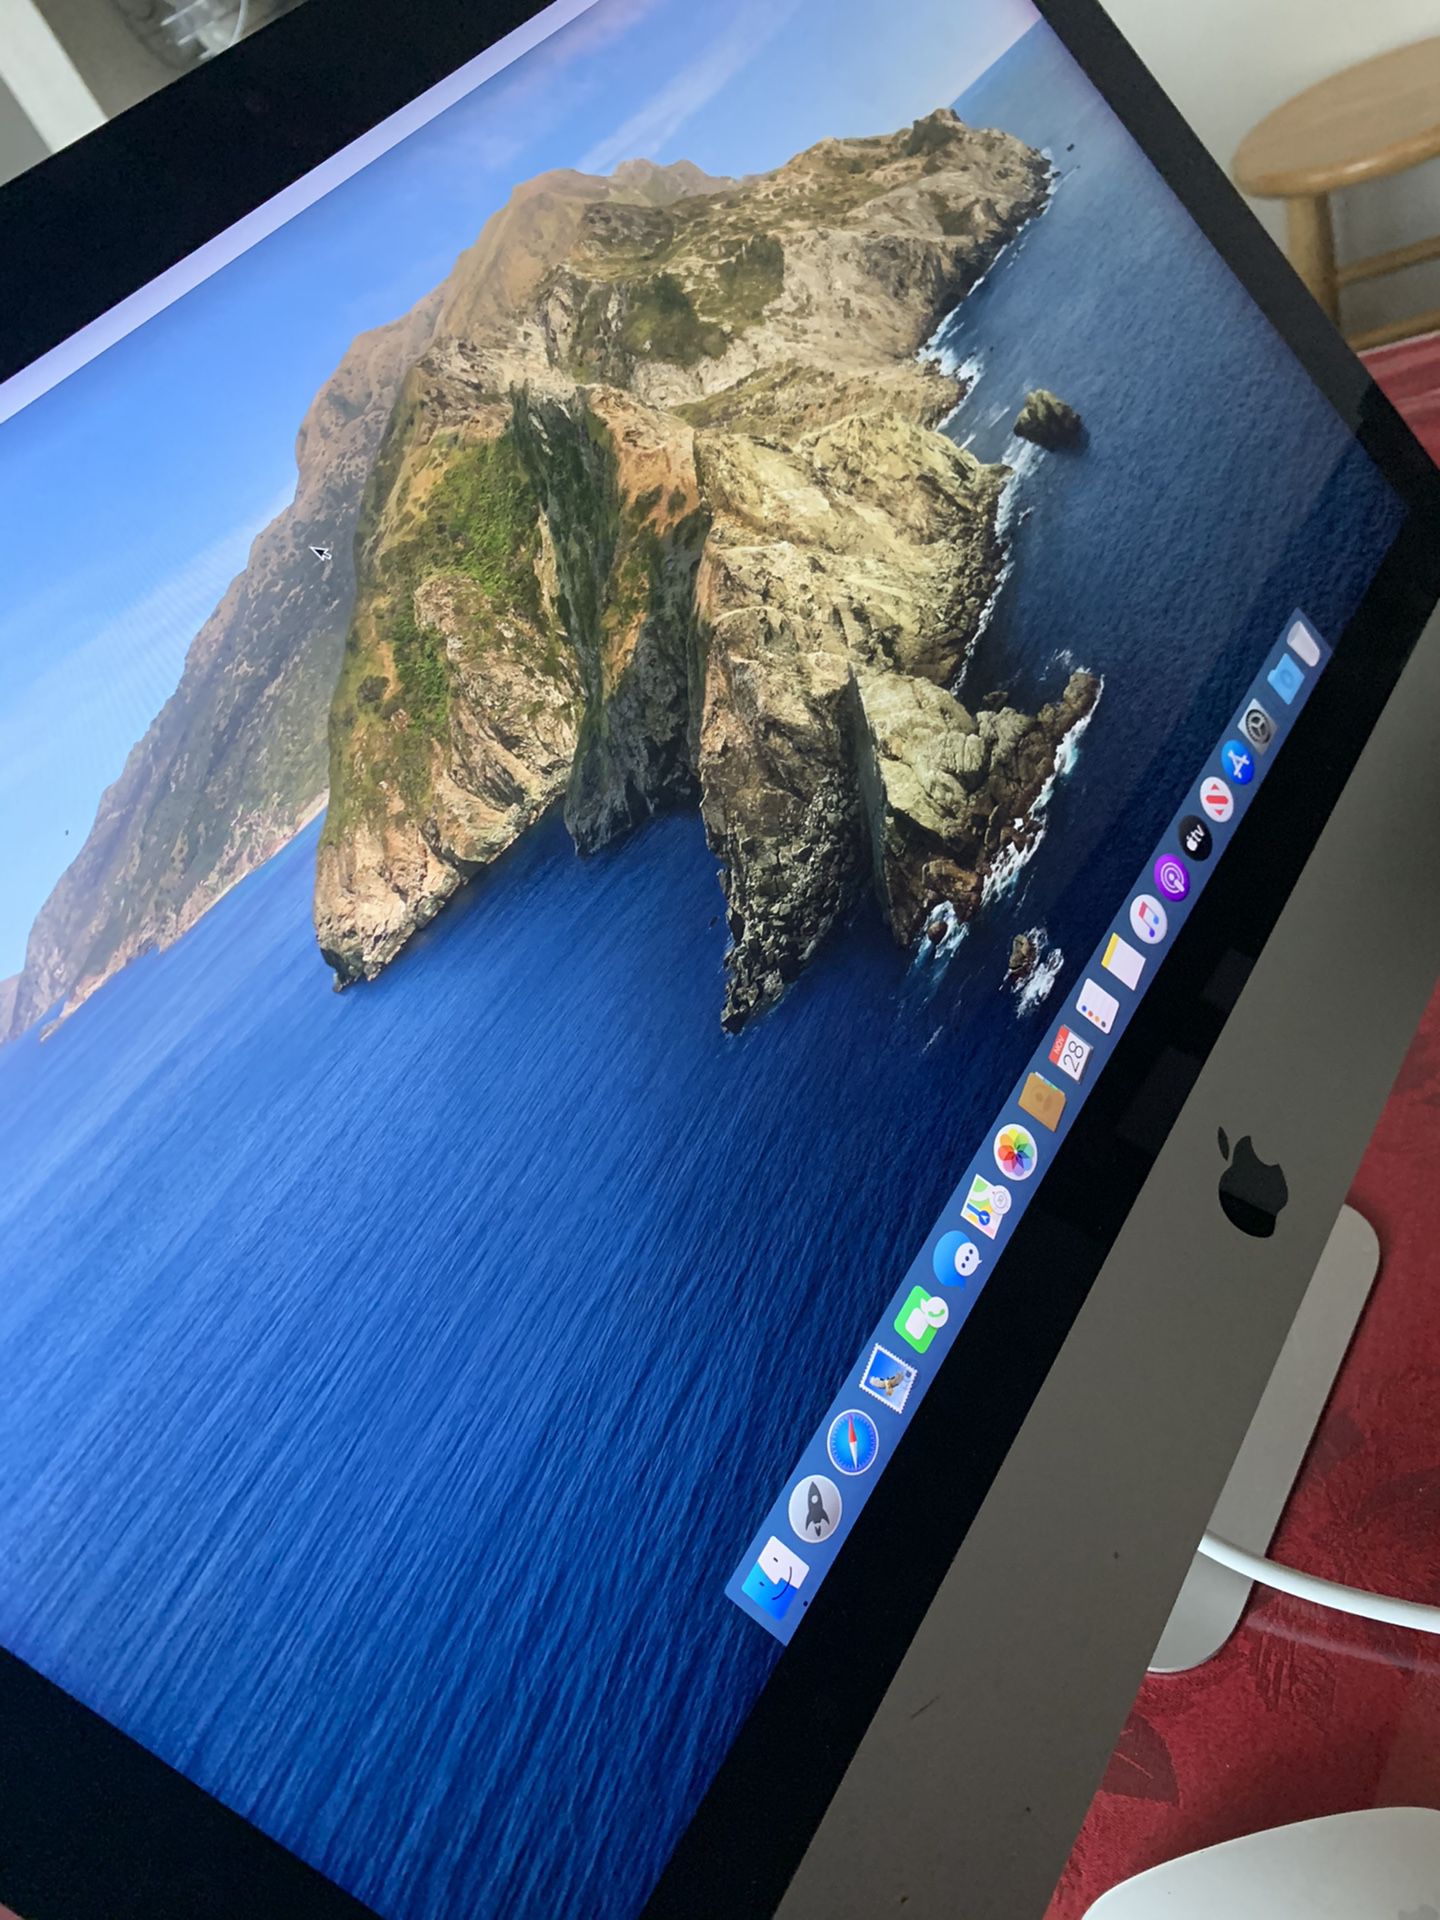 iMac (Retina 4K, 21.5-inch)